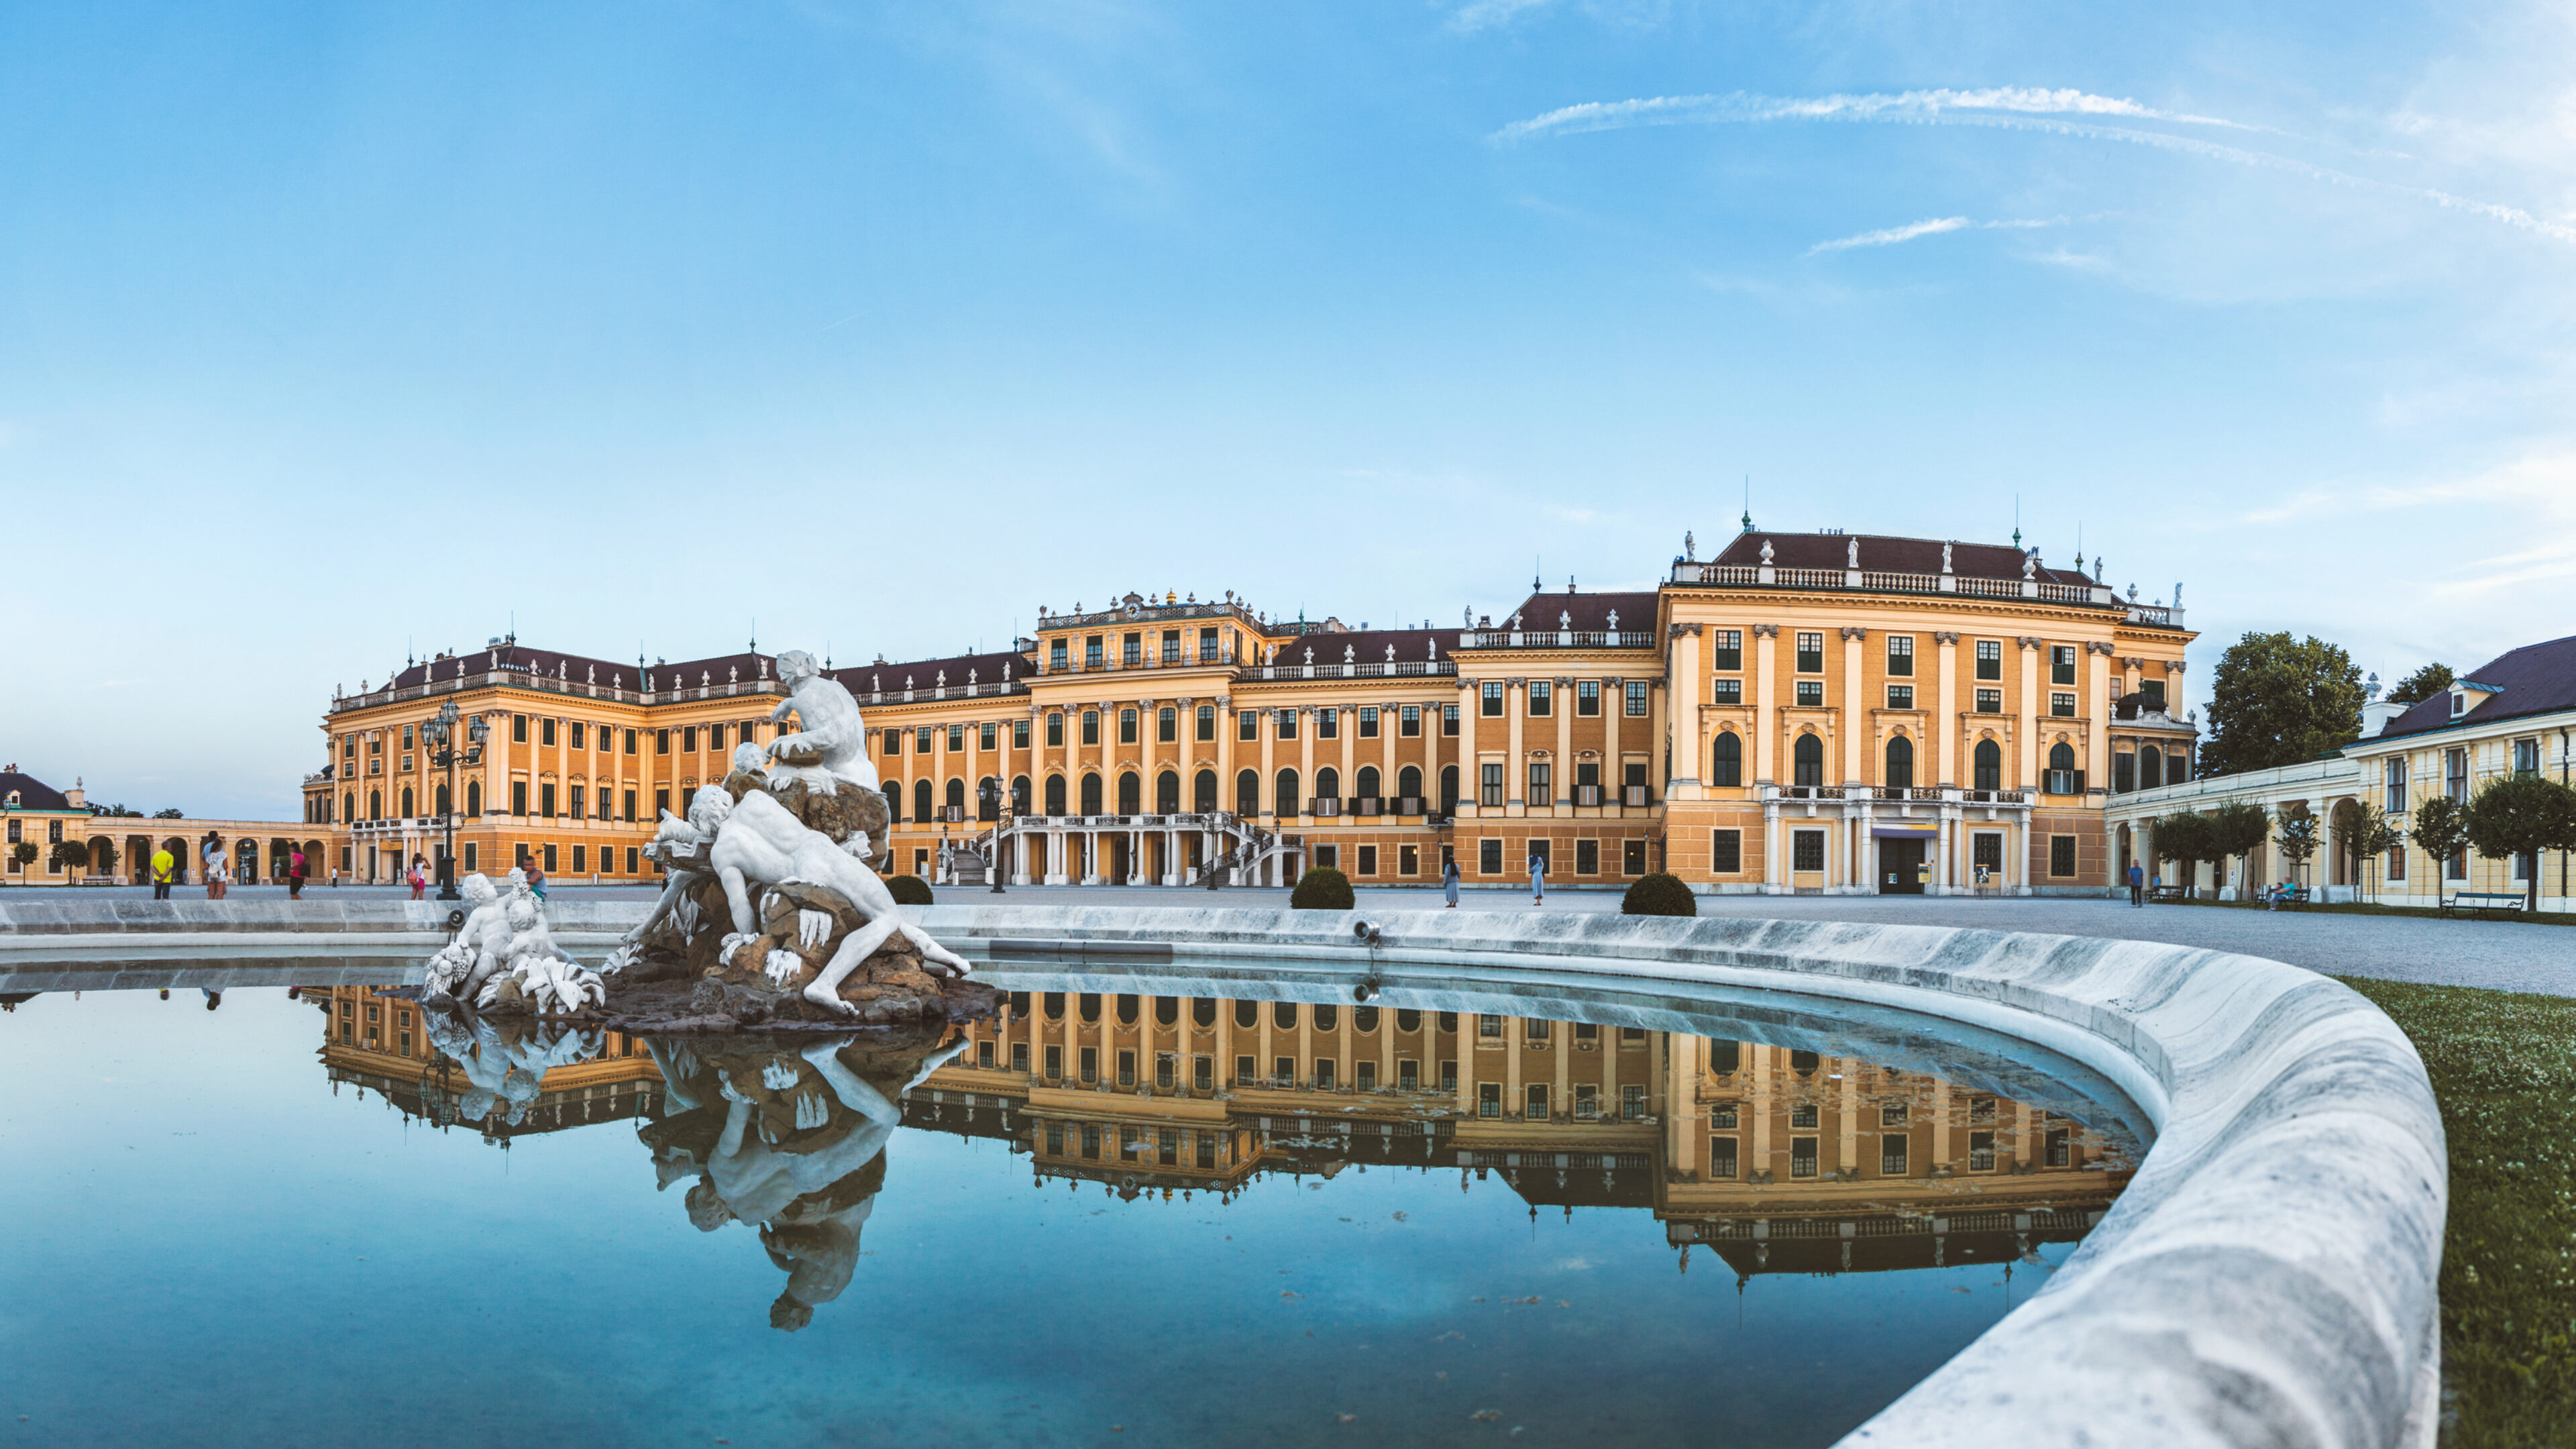 Schonbrunn palace in vienna austria